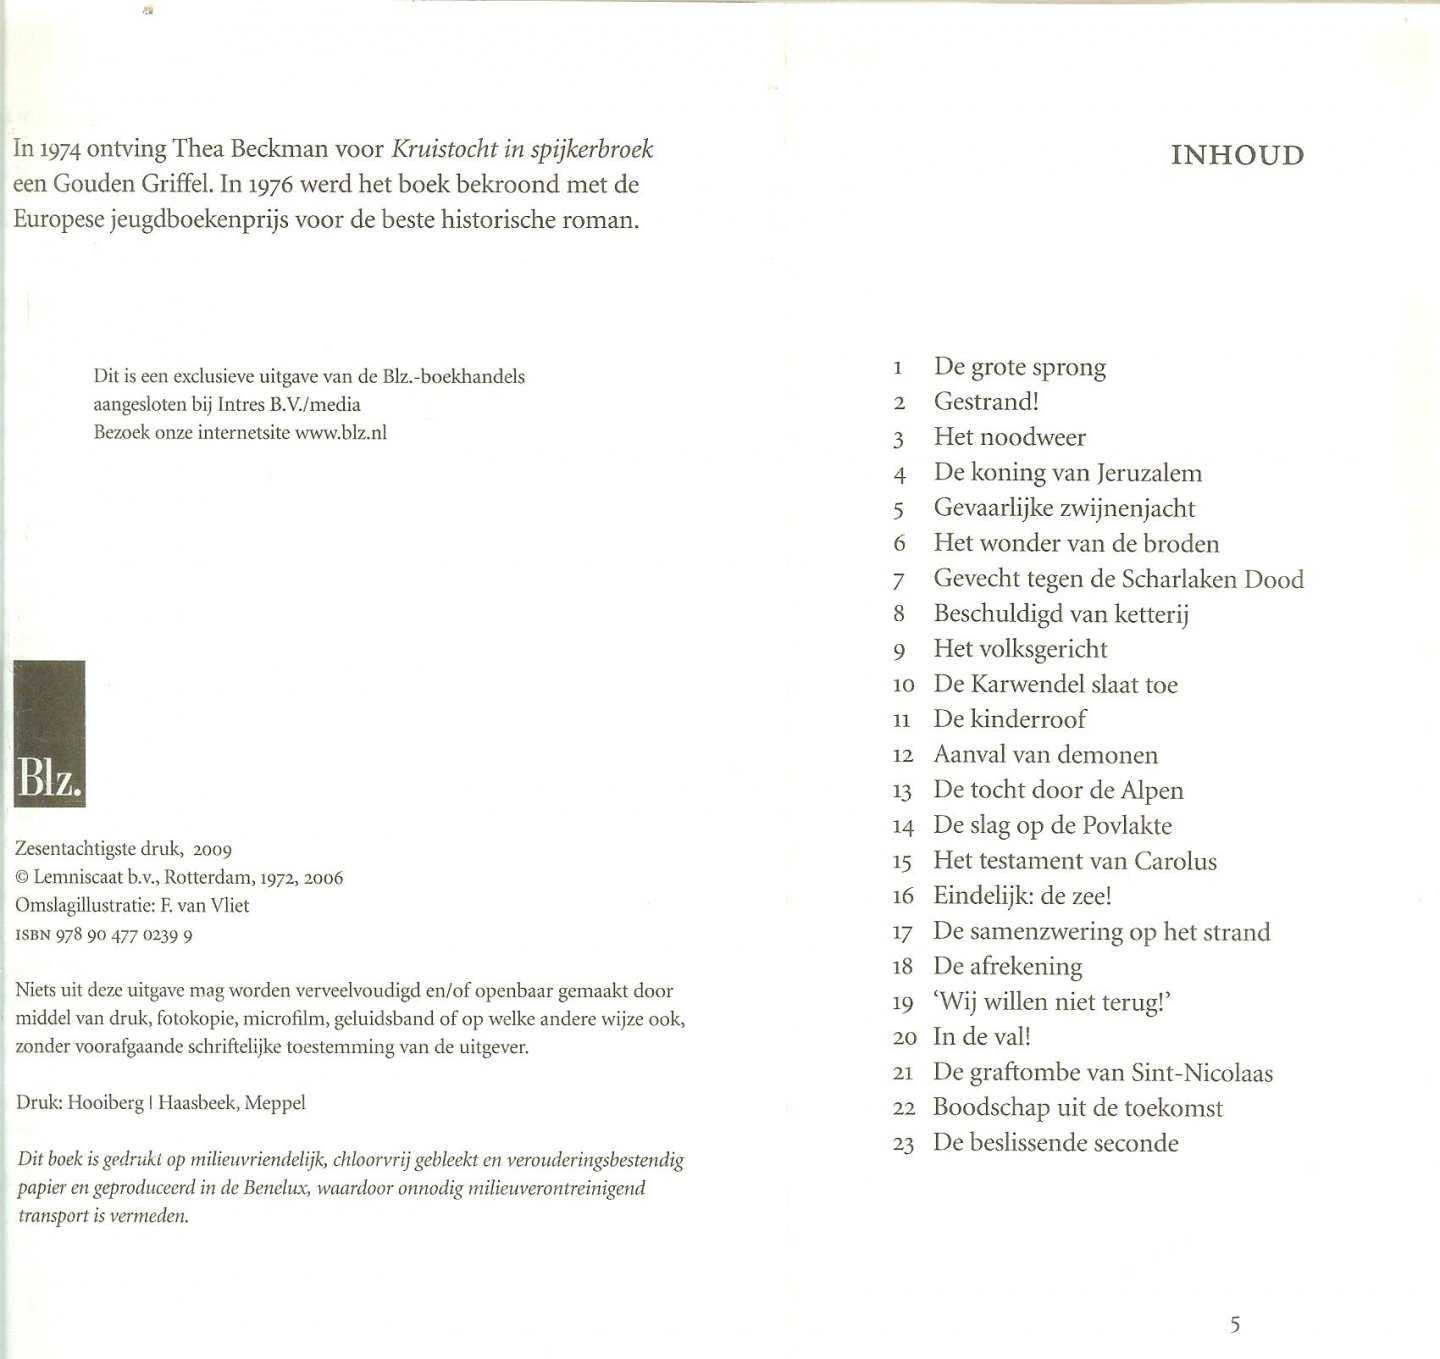 Beckman, Thea Omslag illustratie  F. van Vliet  en Druk Hooiberg - Haasbeek Meppel - Kruistocht in spijkerbroek